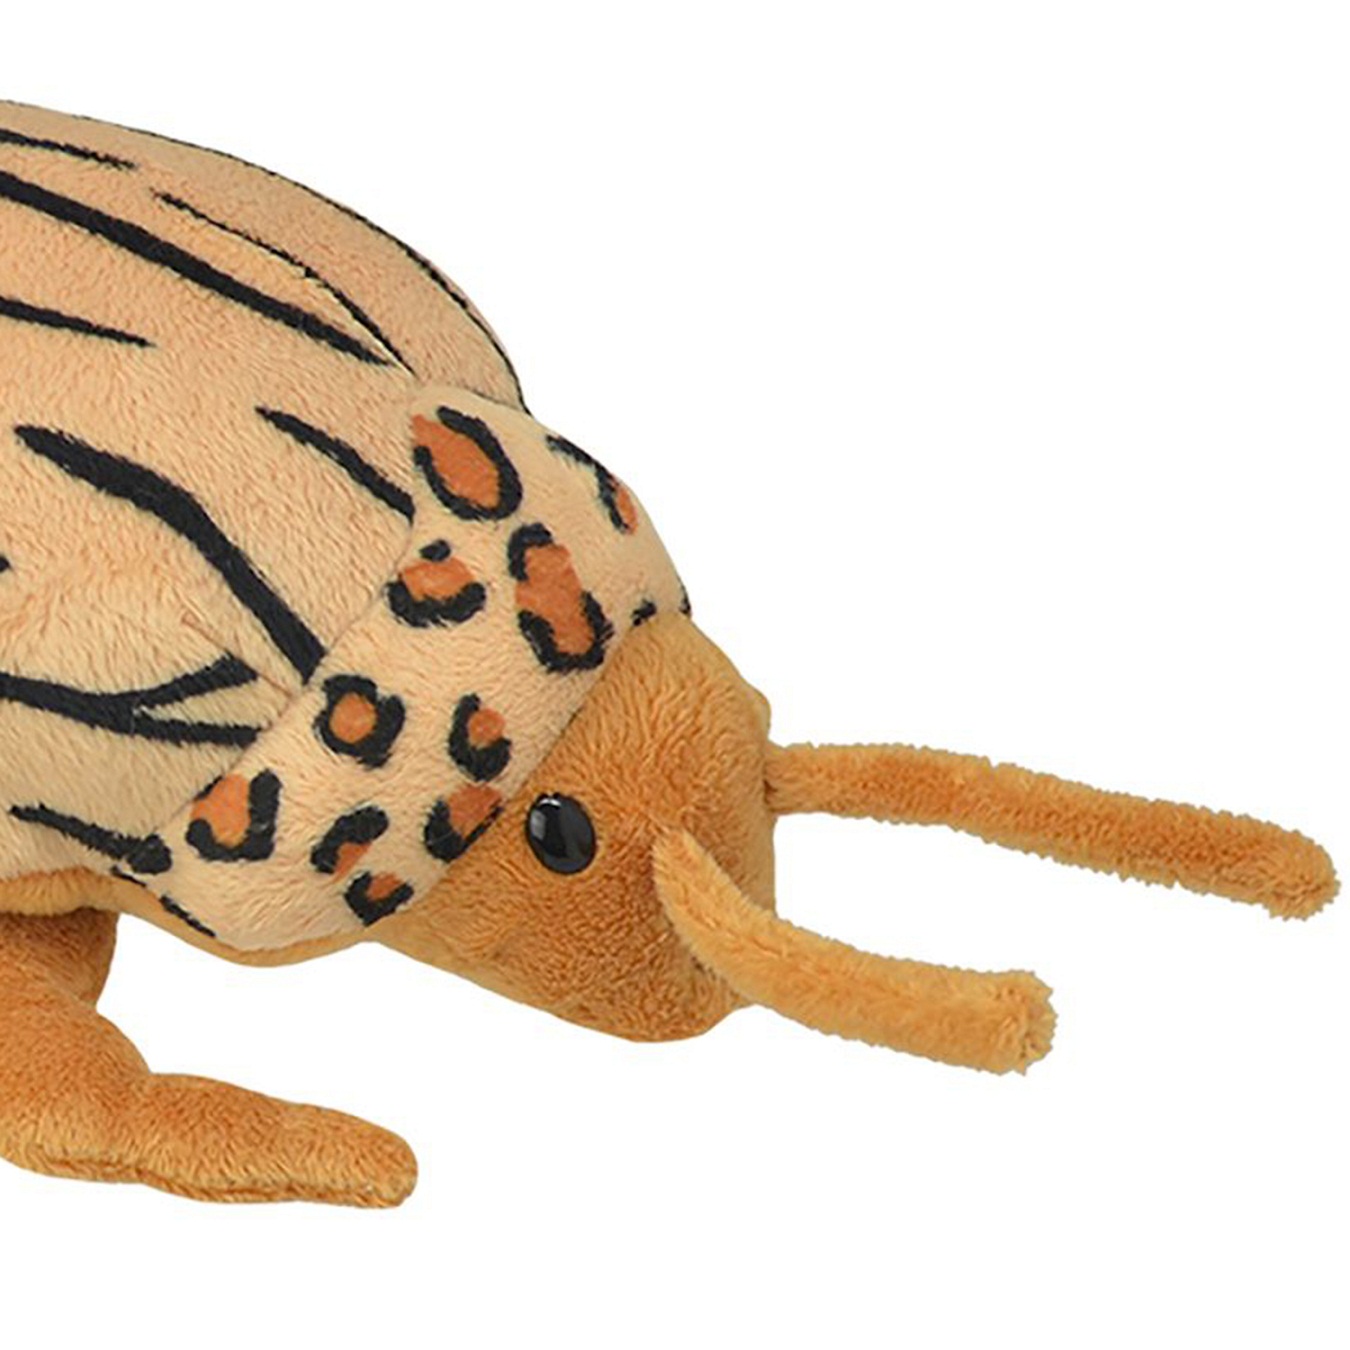 Мягкая игрушка - Колорадский жук, 20 см  